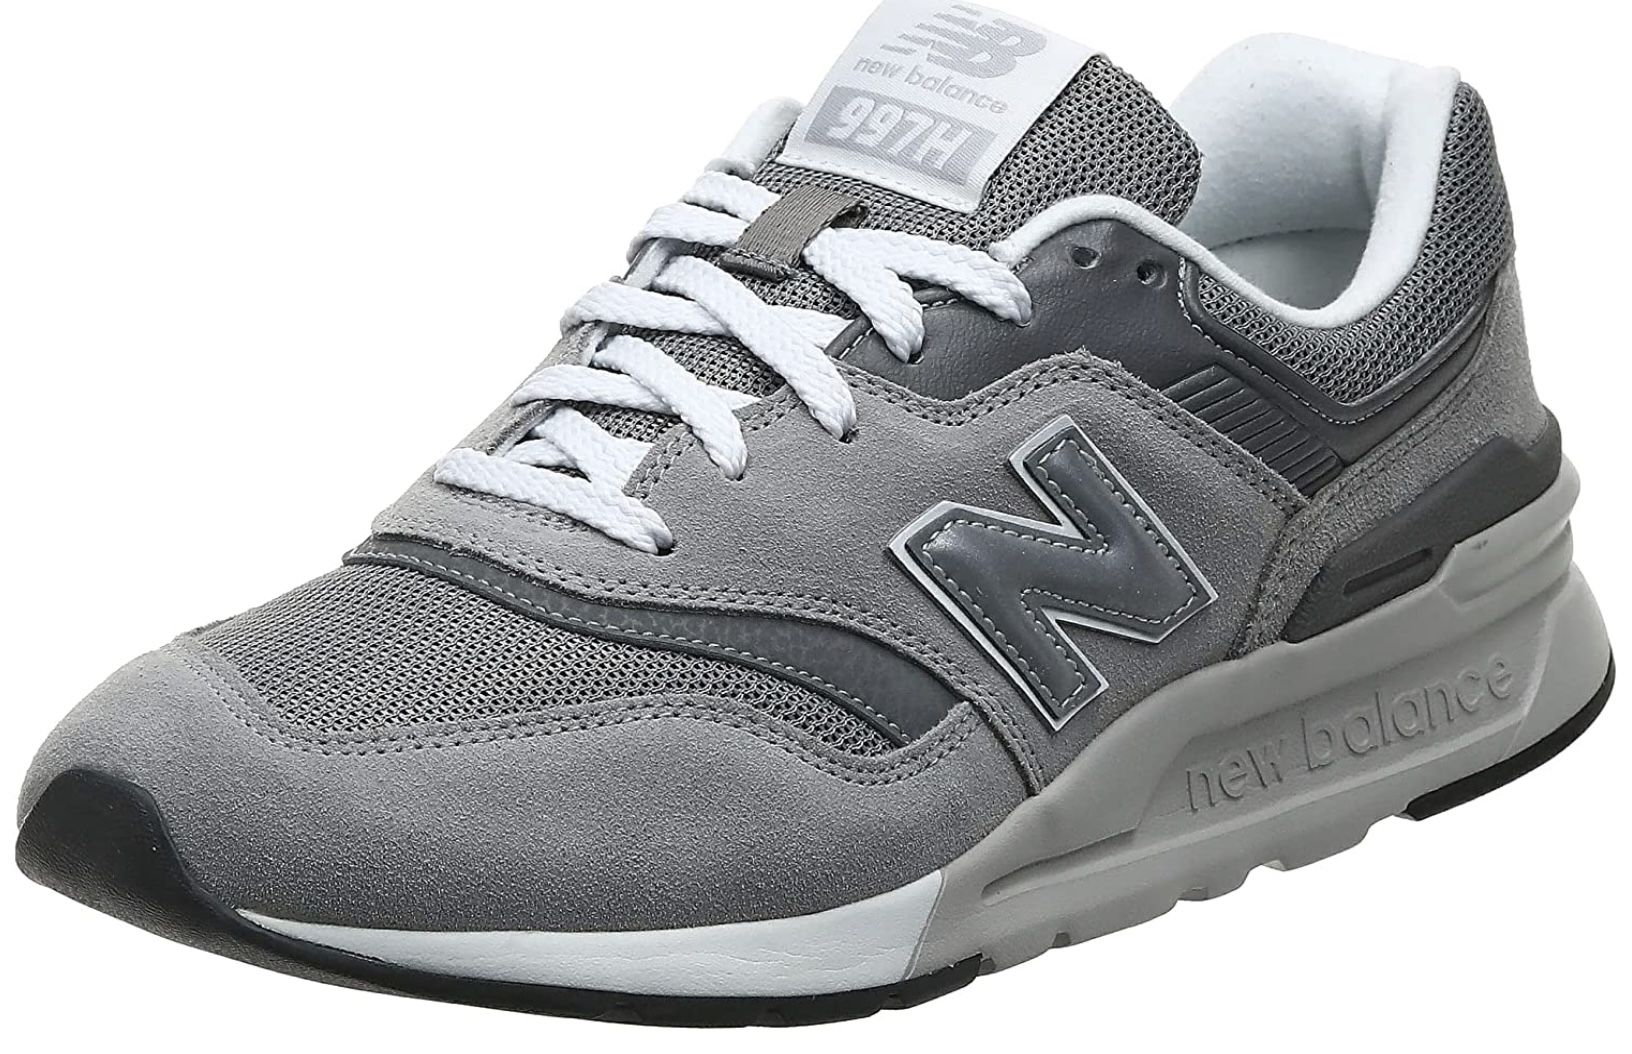 Verenigen oven Broer New Balance Herren 997H Core Trainers Sneaker in Grau für 49,95€ (statt 65€)